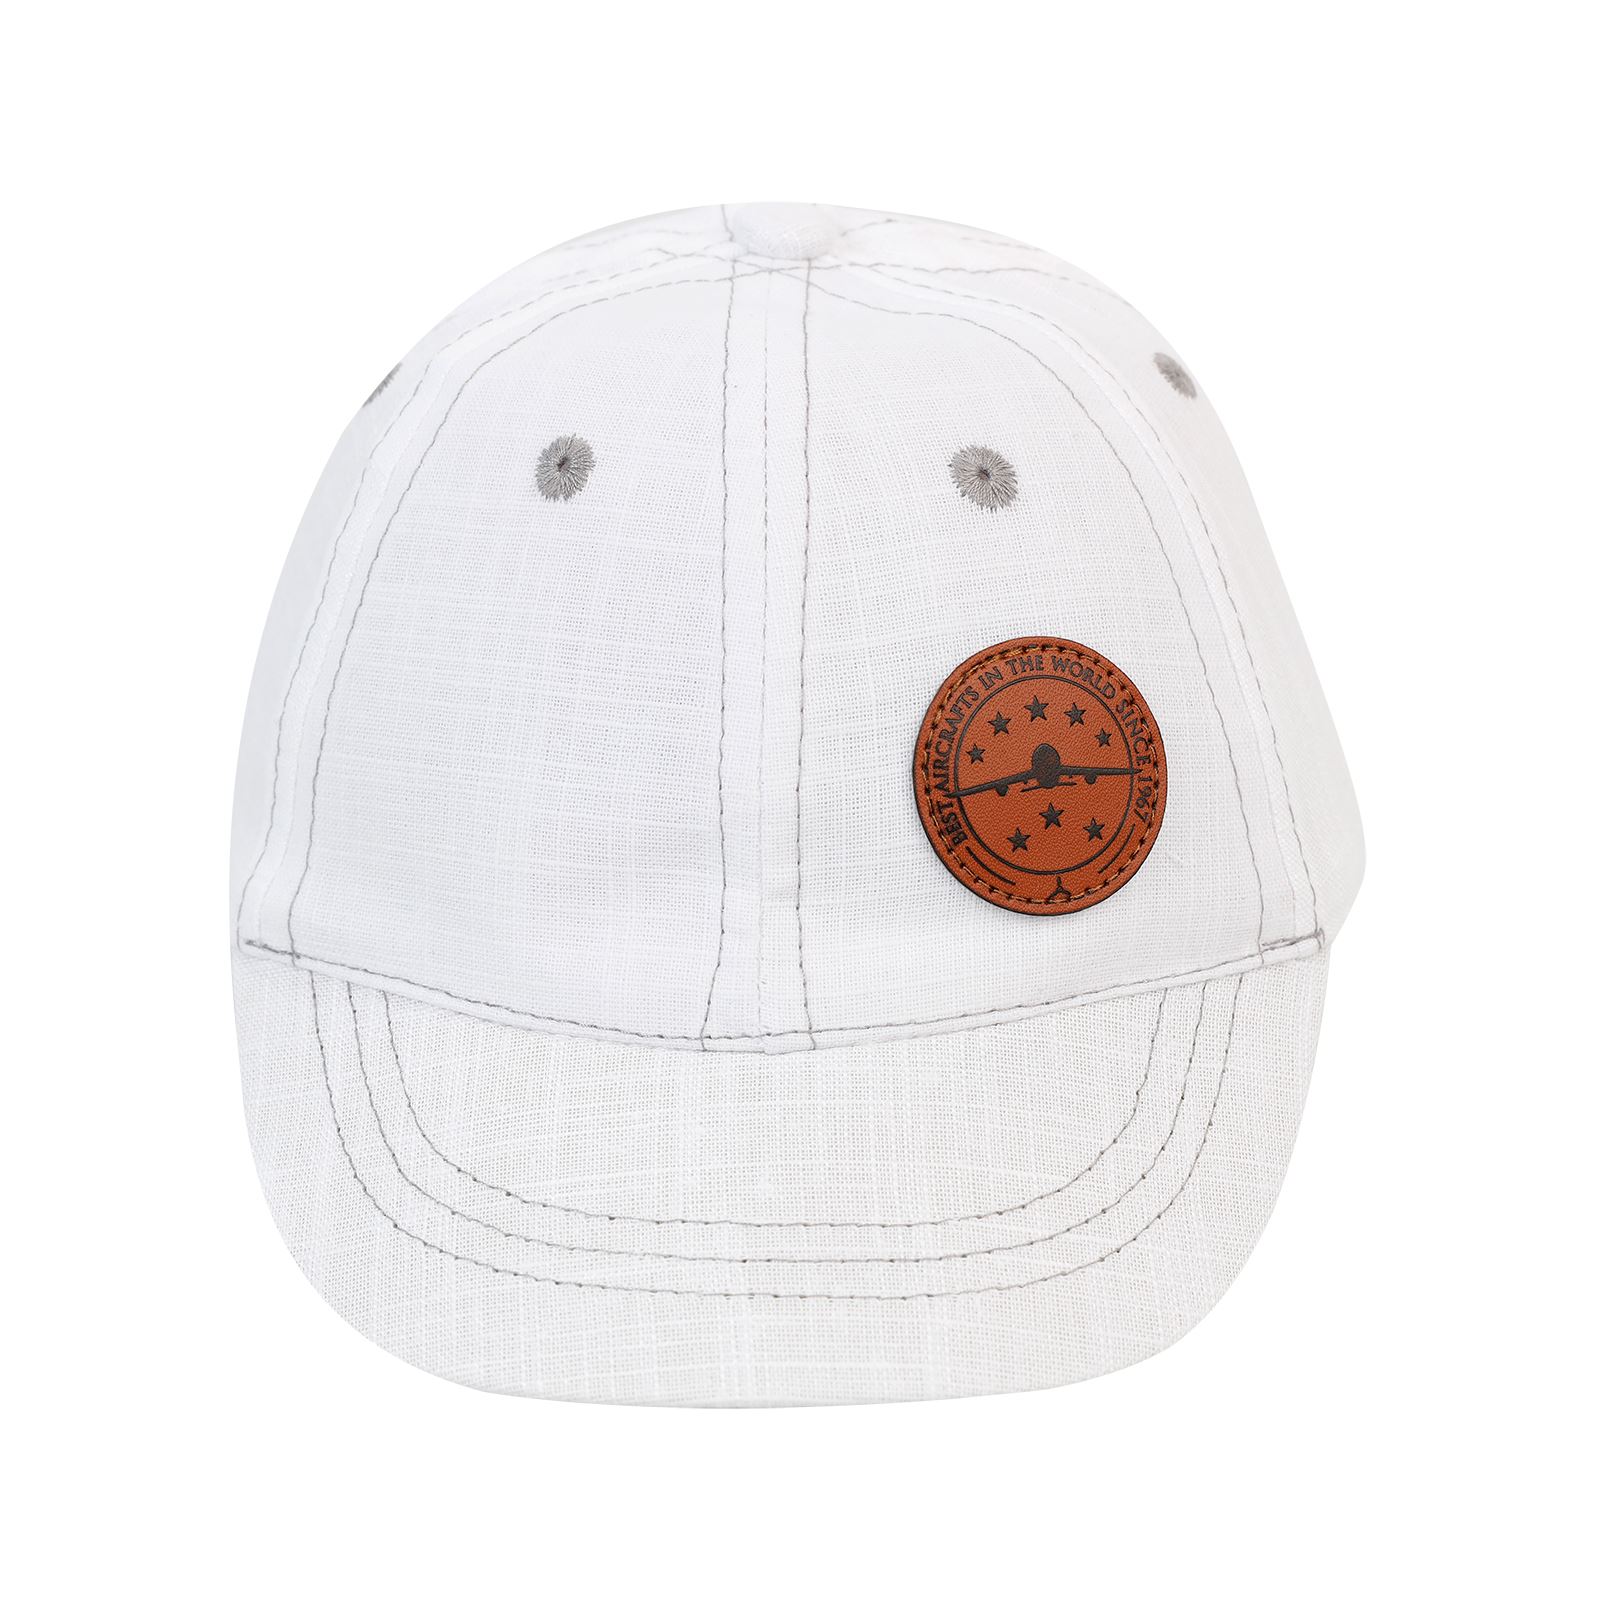 Kitti Erkek Çocuk Kep Şapka 1-4 Yaş Beyaz